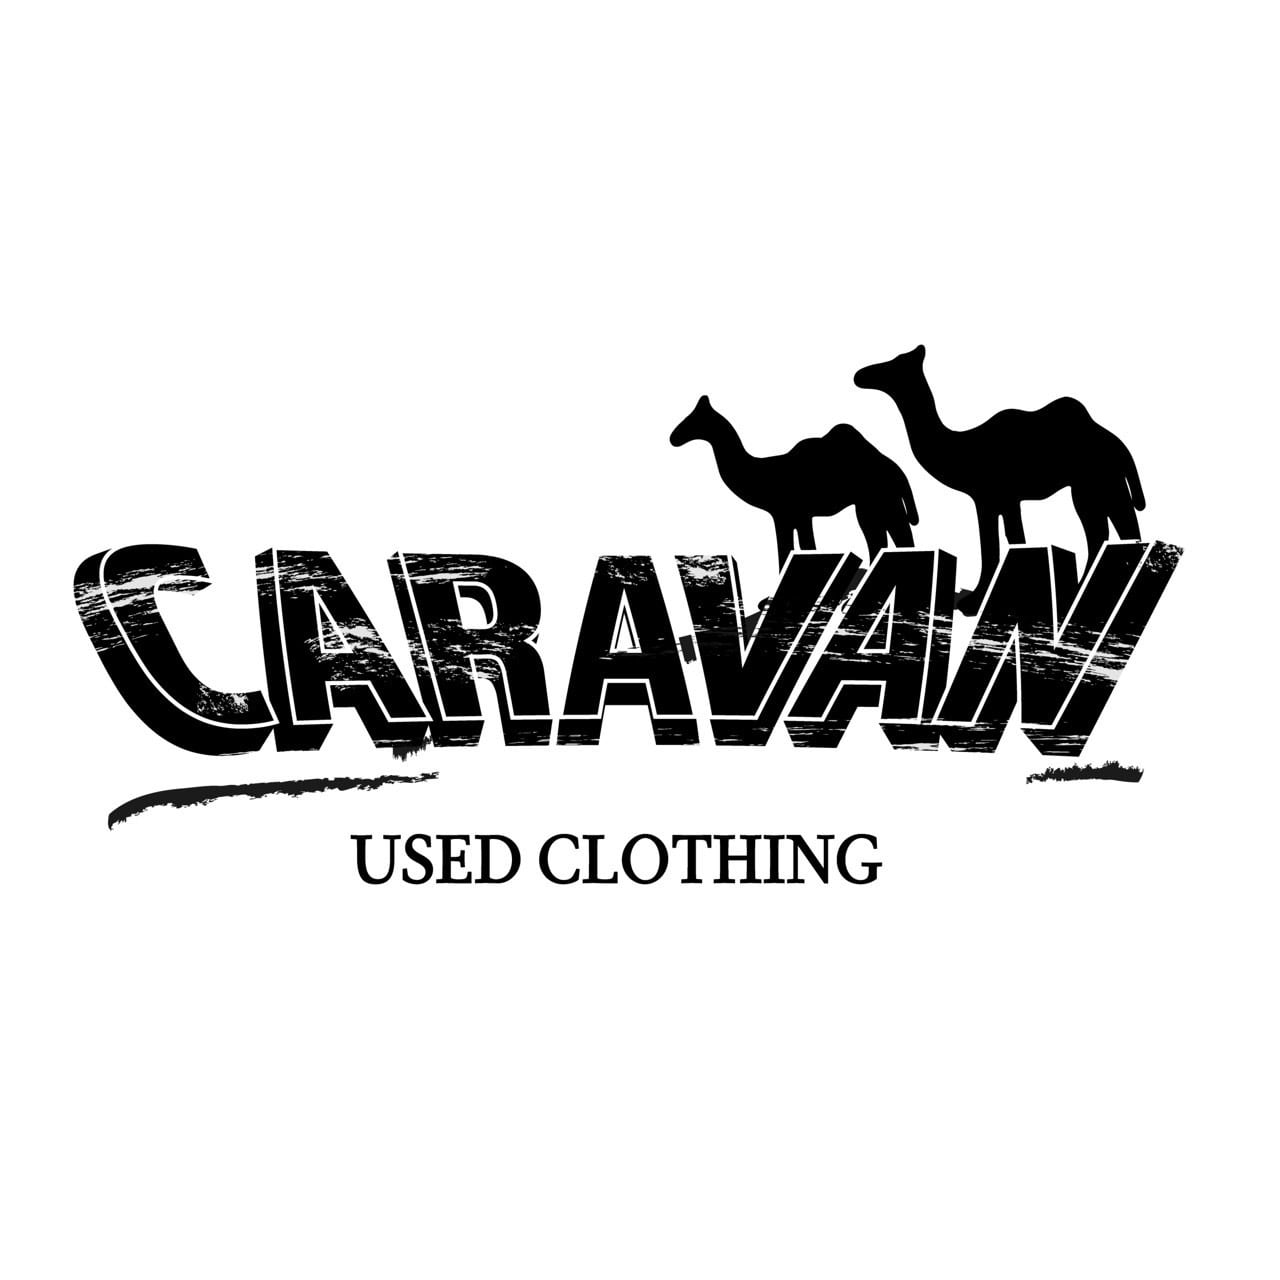 USED CLOTHING CARAVAN